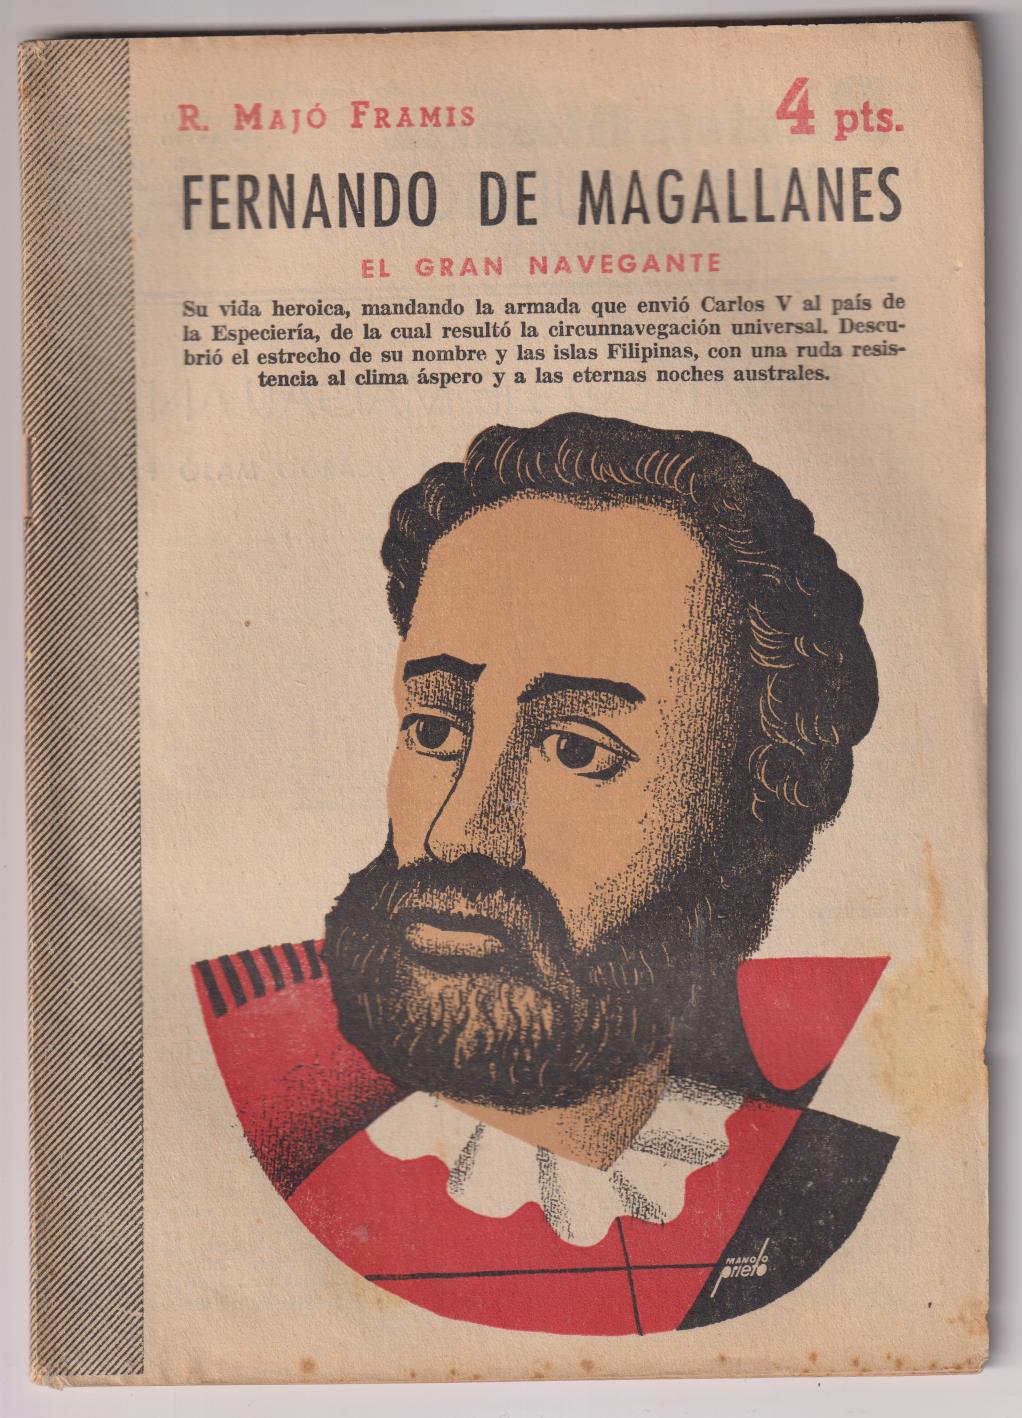 Revista Literaria Novelas y Cuentos nº 1331. Fernando de Magallanes por R. Majó Framis, 1956